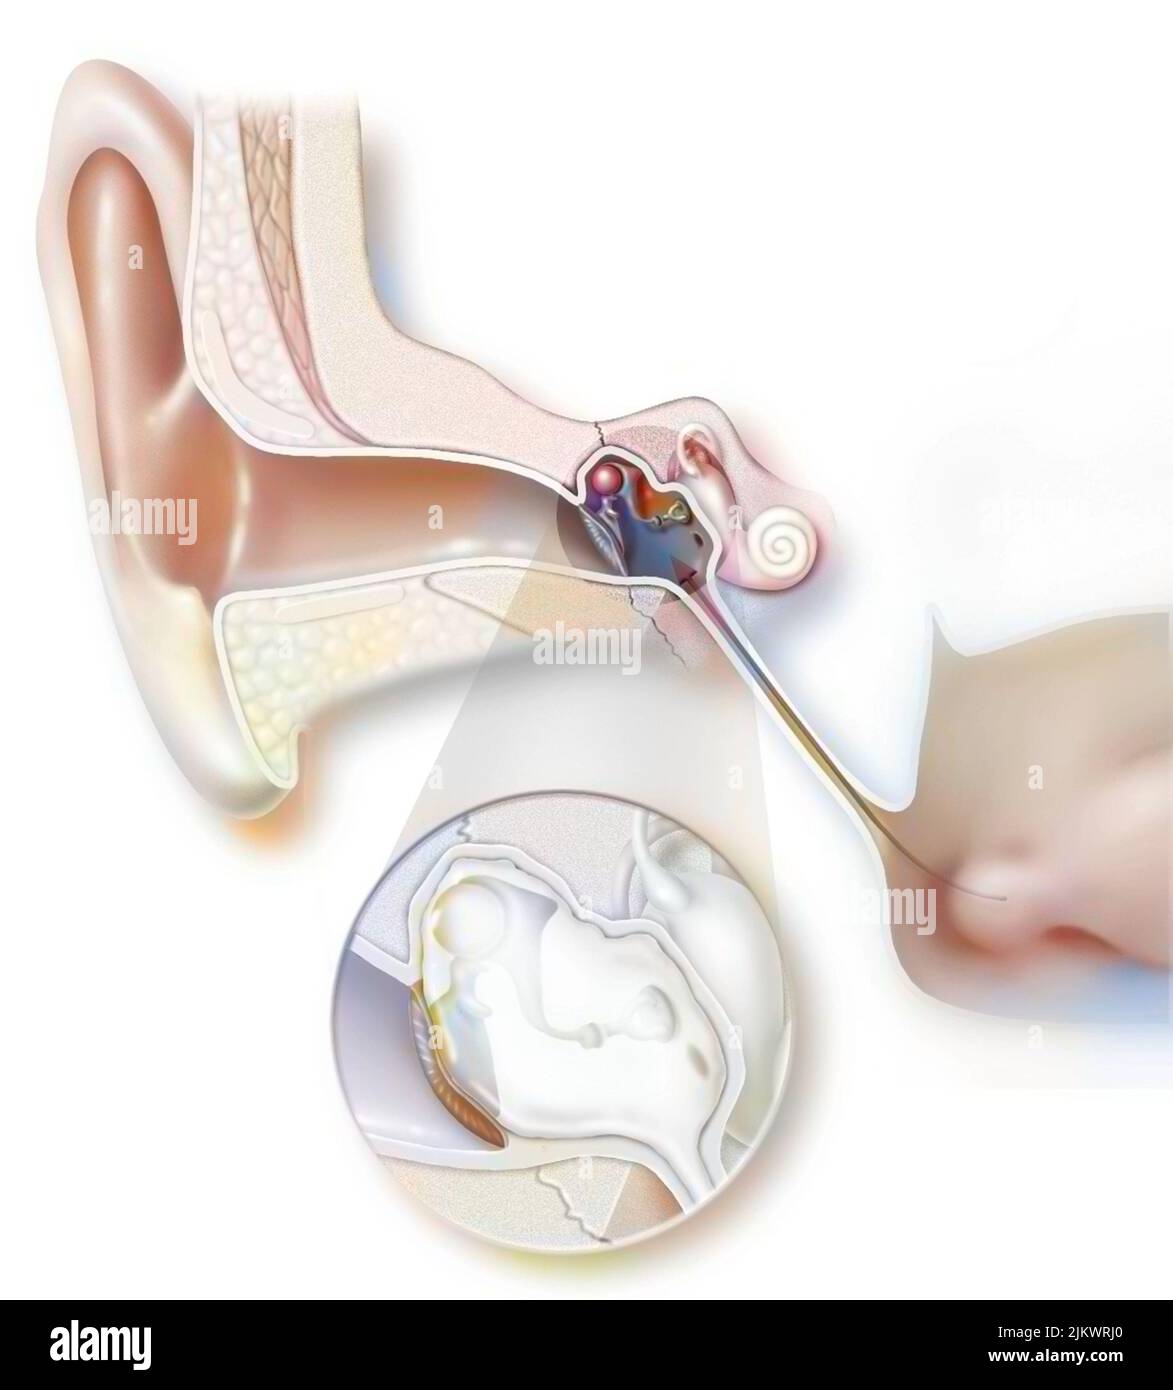 L'otite aiguë est une inflammation bactérienne ou virale de l'oreille moyenne. Banque D'Images